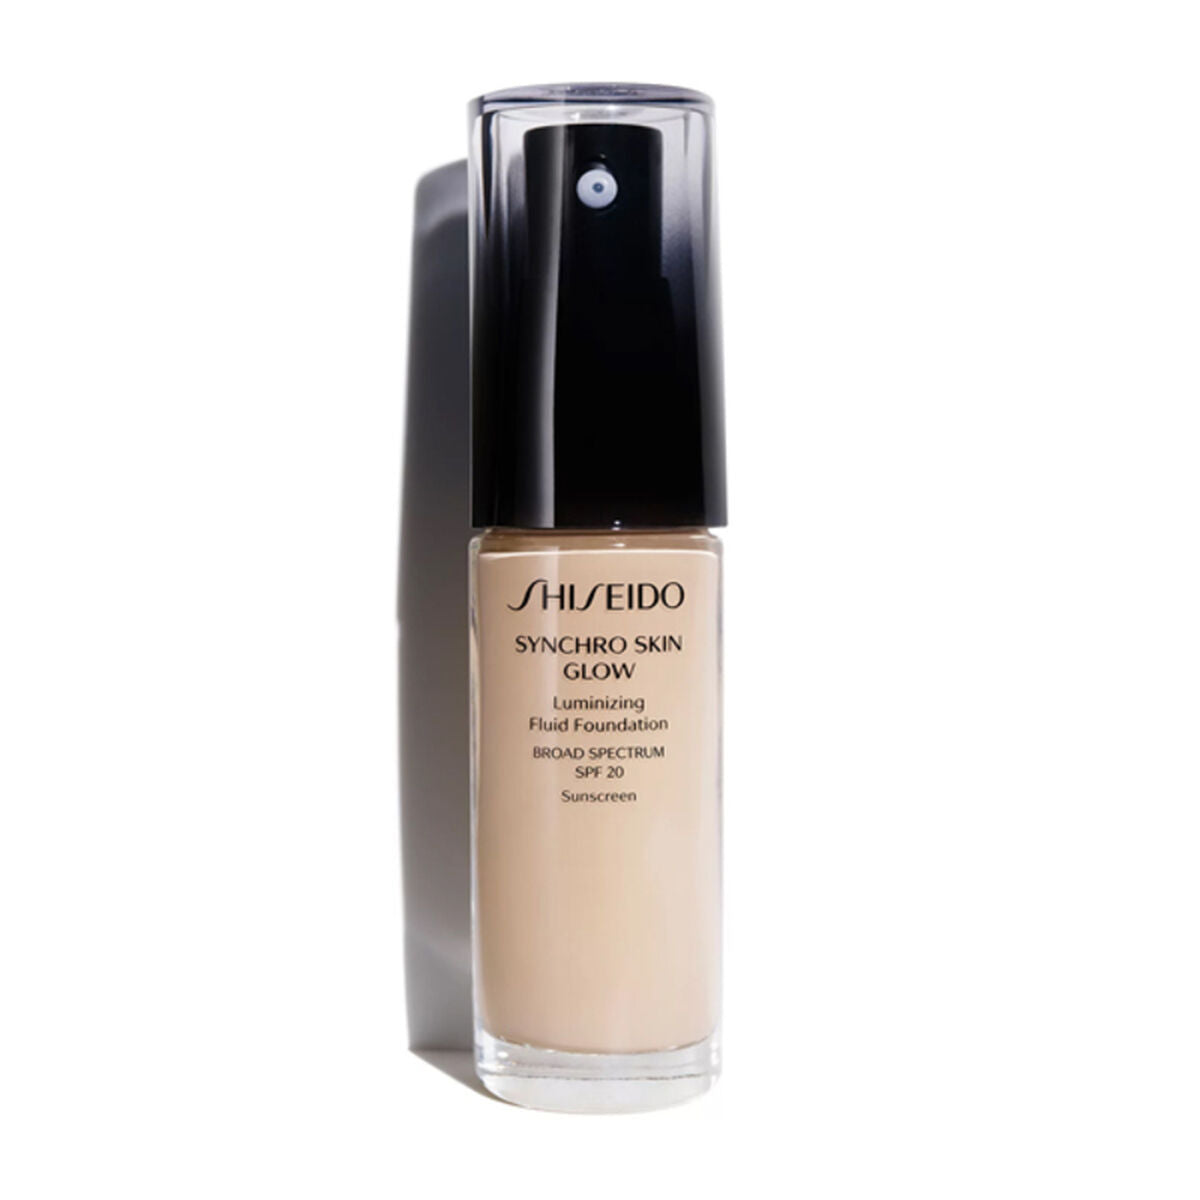 Cremige Make-up Grundierung Synchro Skin Glow G5 Shiseido Luminizer